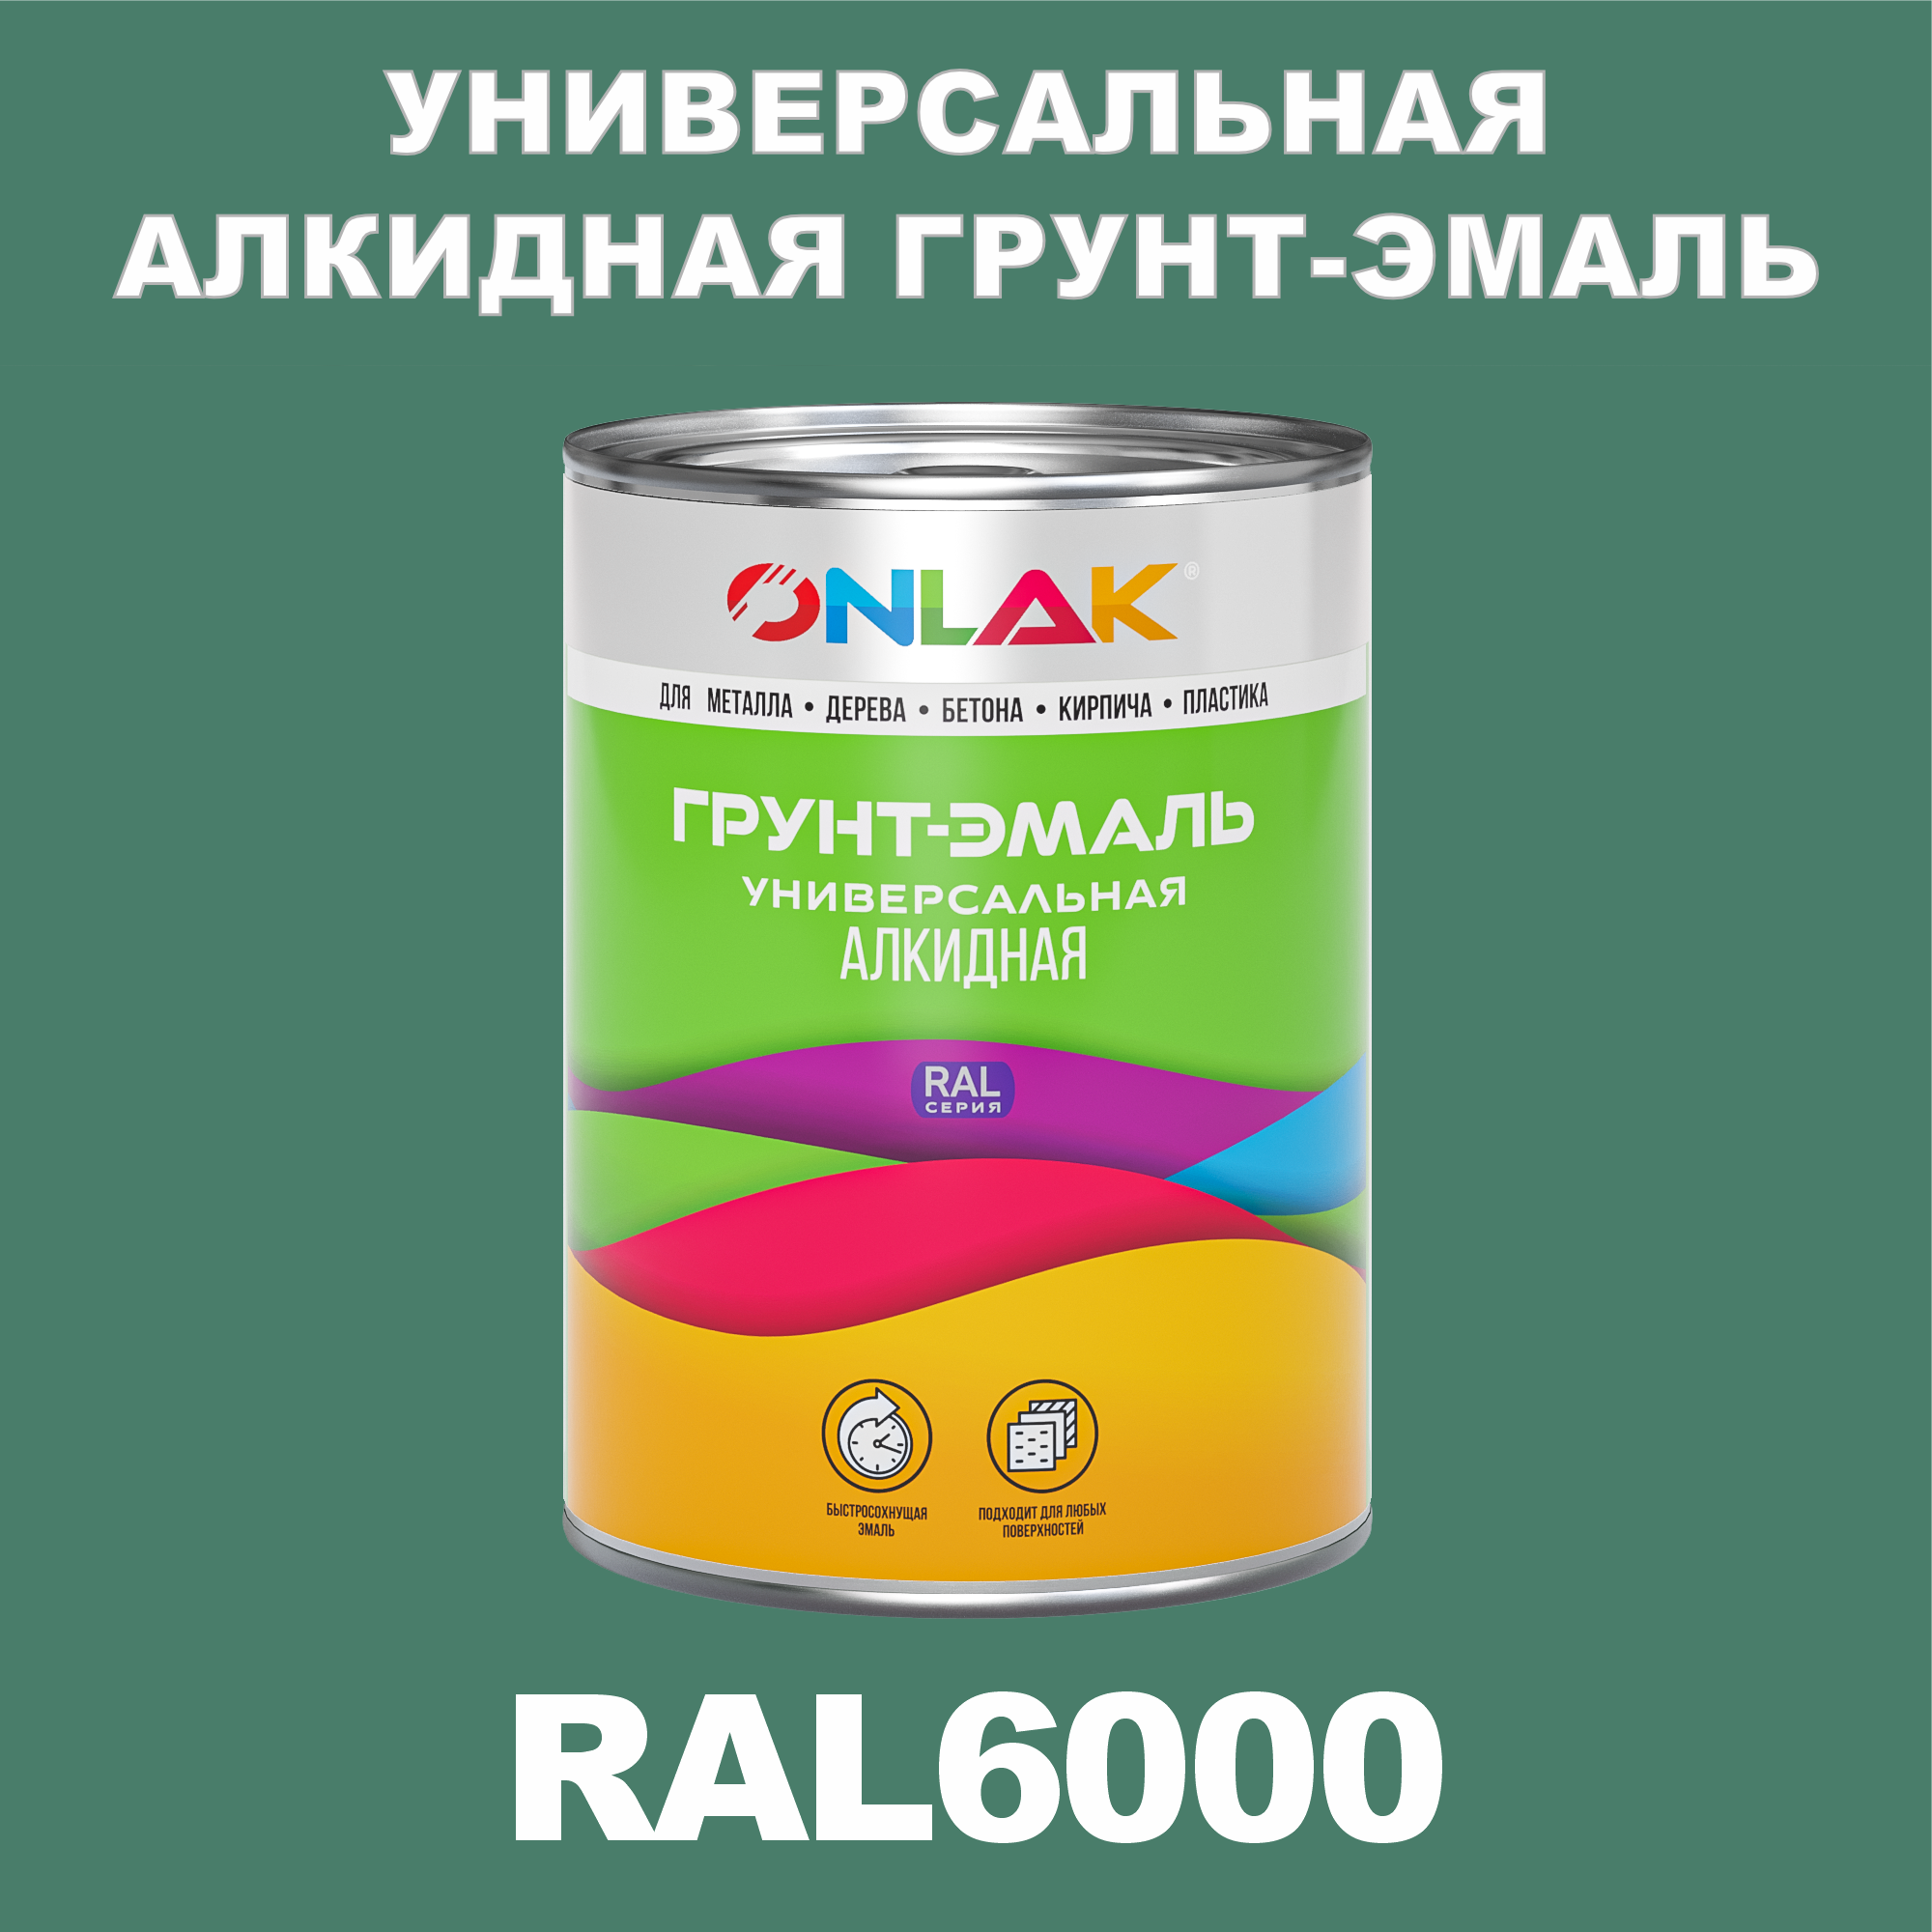 Грунт-эмаль ONLAK 1К RAL6000 антикоррозионная алкидная по металлу по ржавчине 1 кг грунт для масла mighty oak